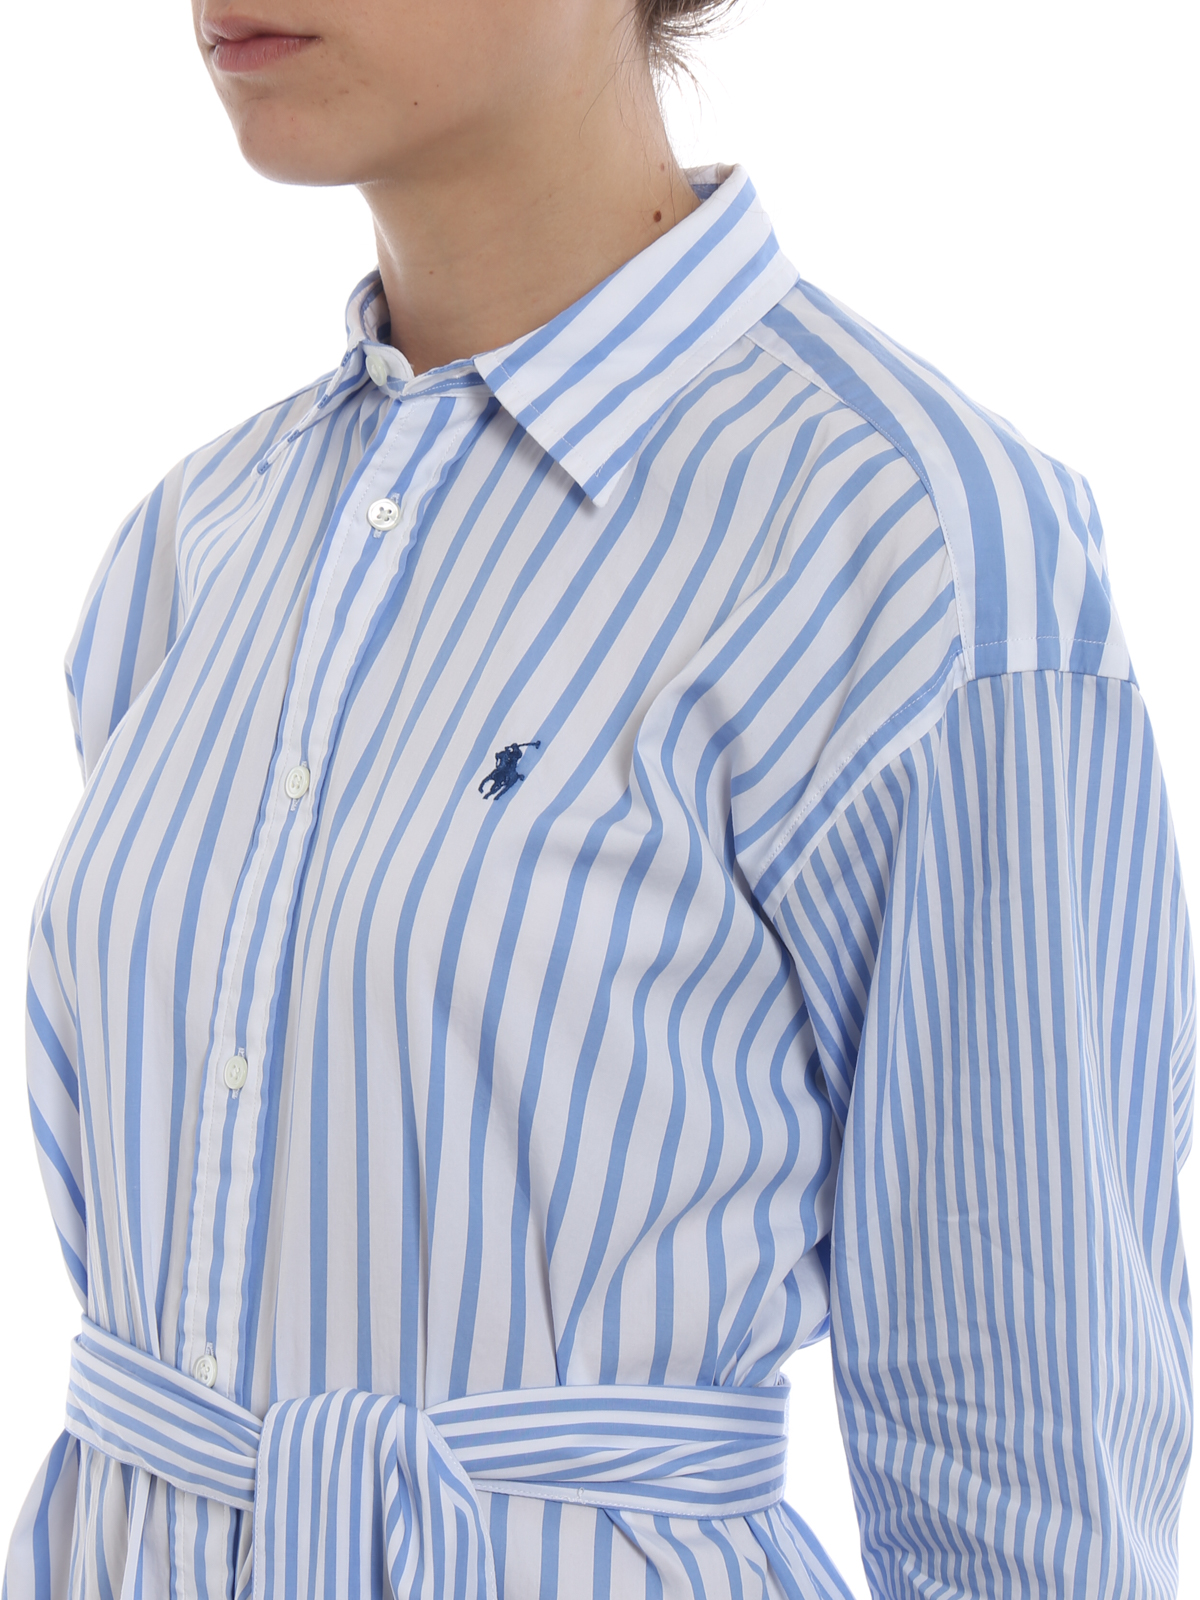 striped cotton shirt dress ralph lauren